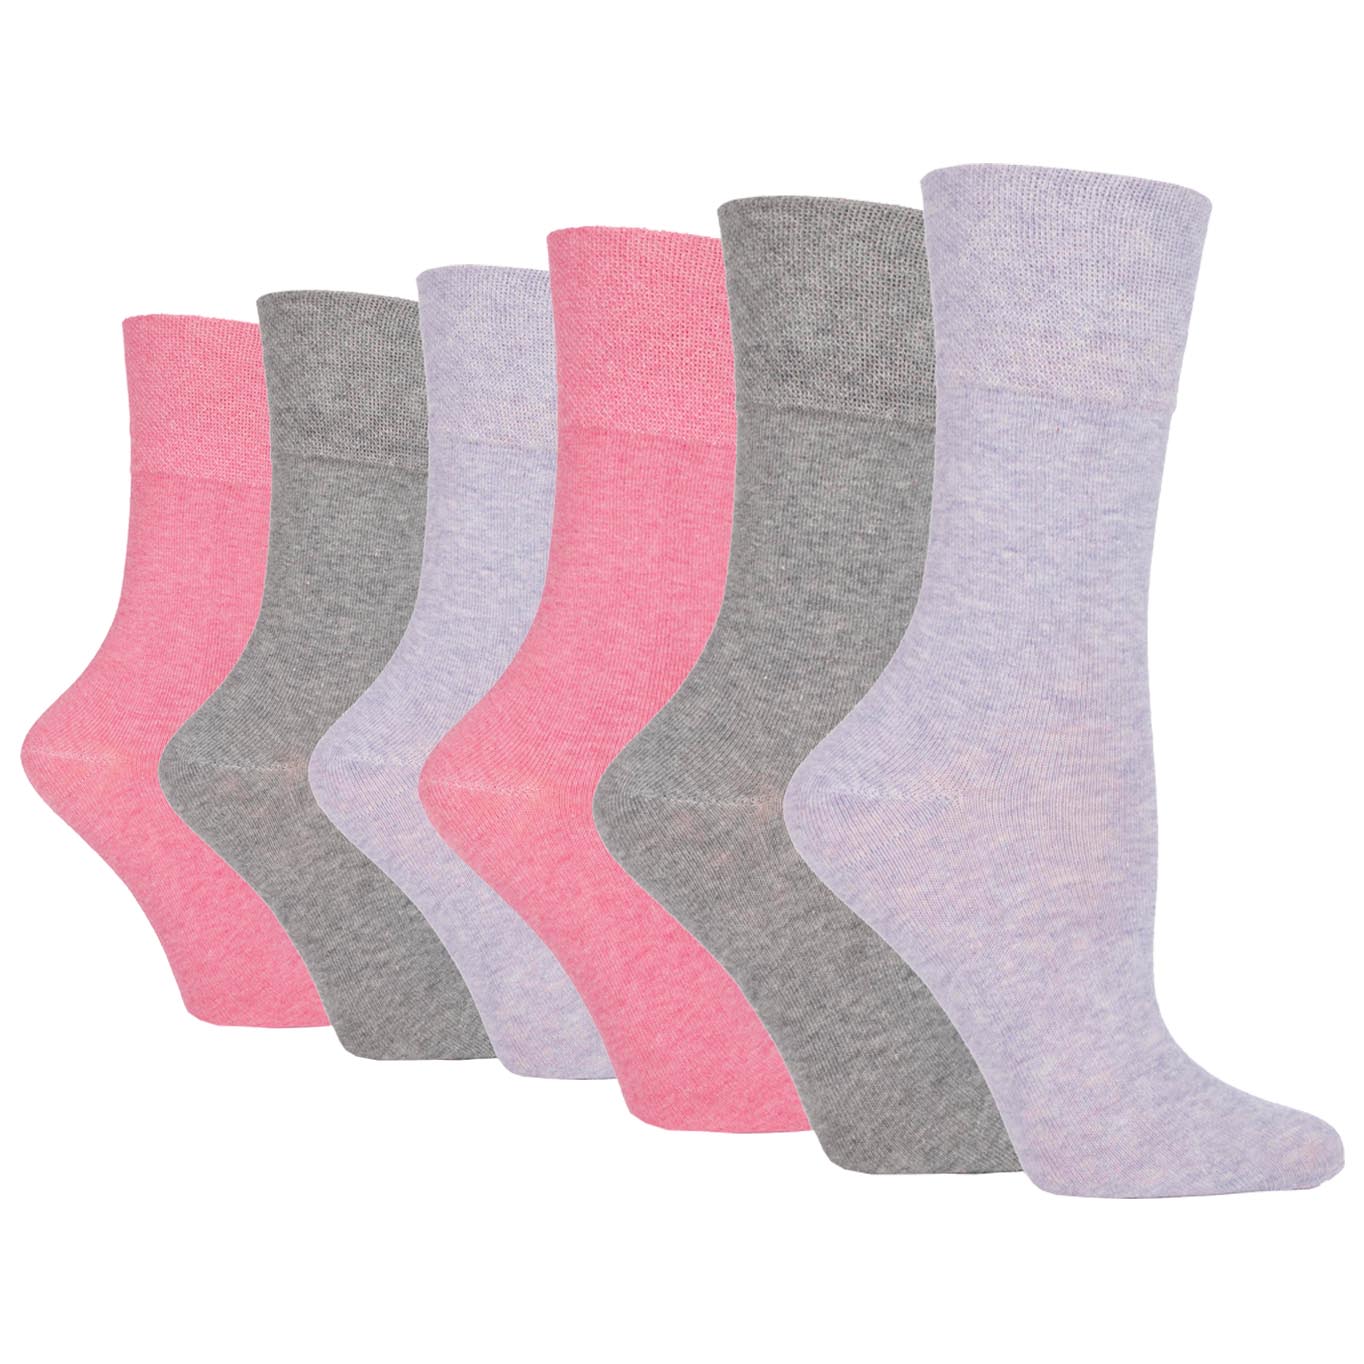 6 Pairs Ladies Gentle Grip Cotton Socks Grey/Lavender/Rose